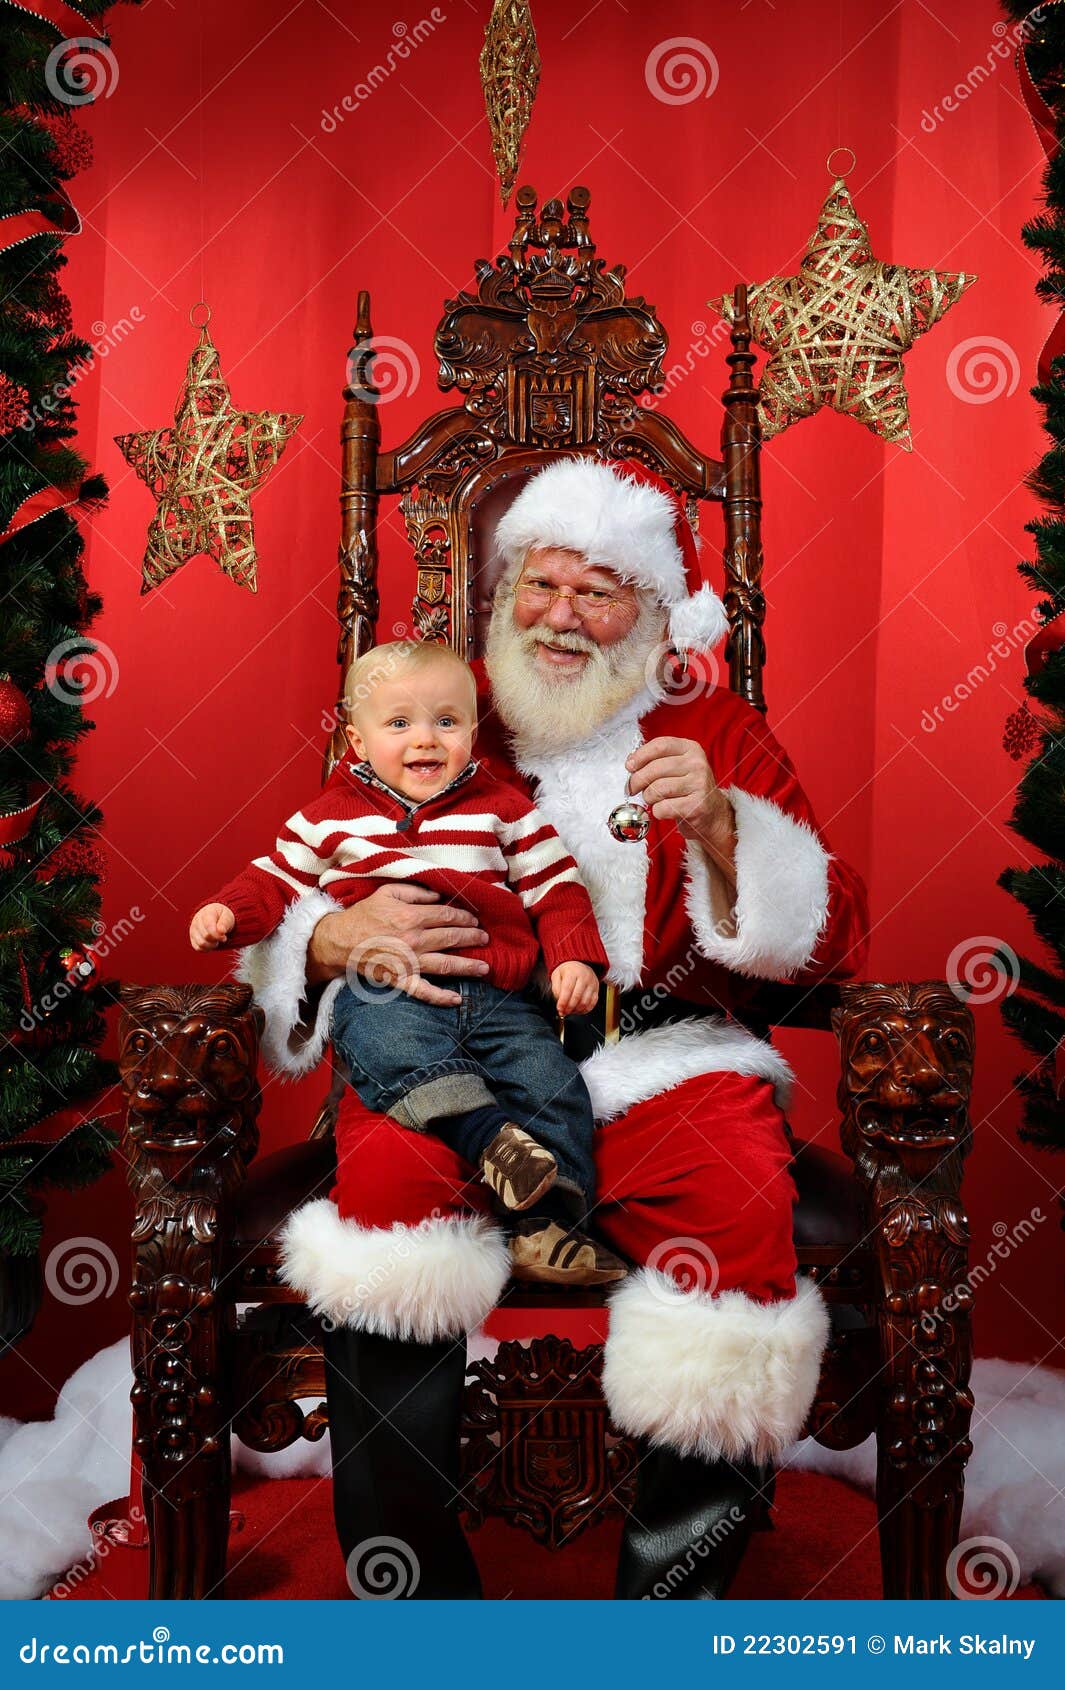 Baby Sitting On Santa's Lap Stock Image - Image: 22302591